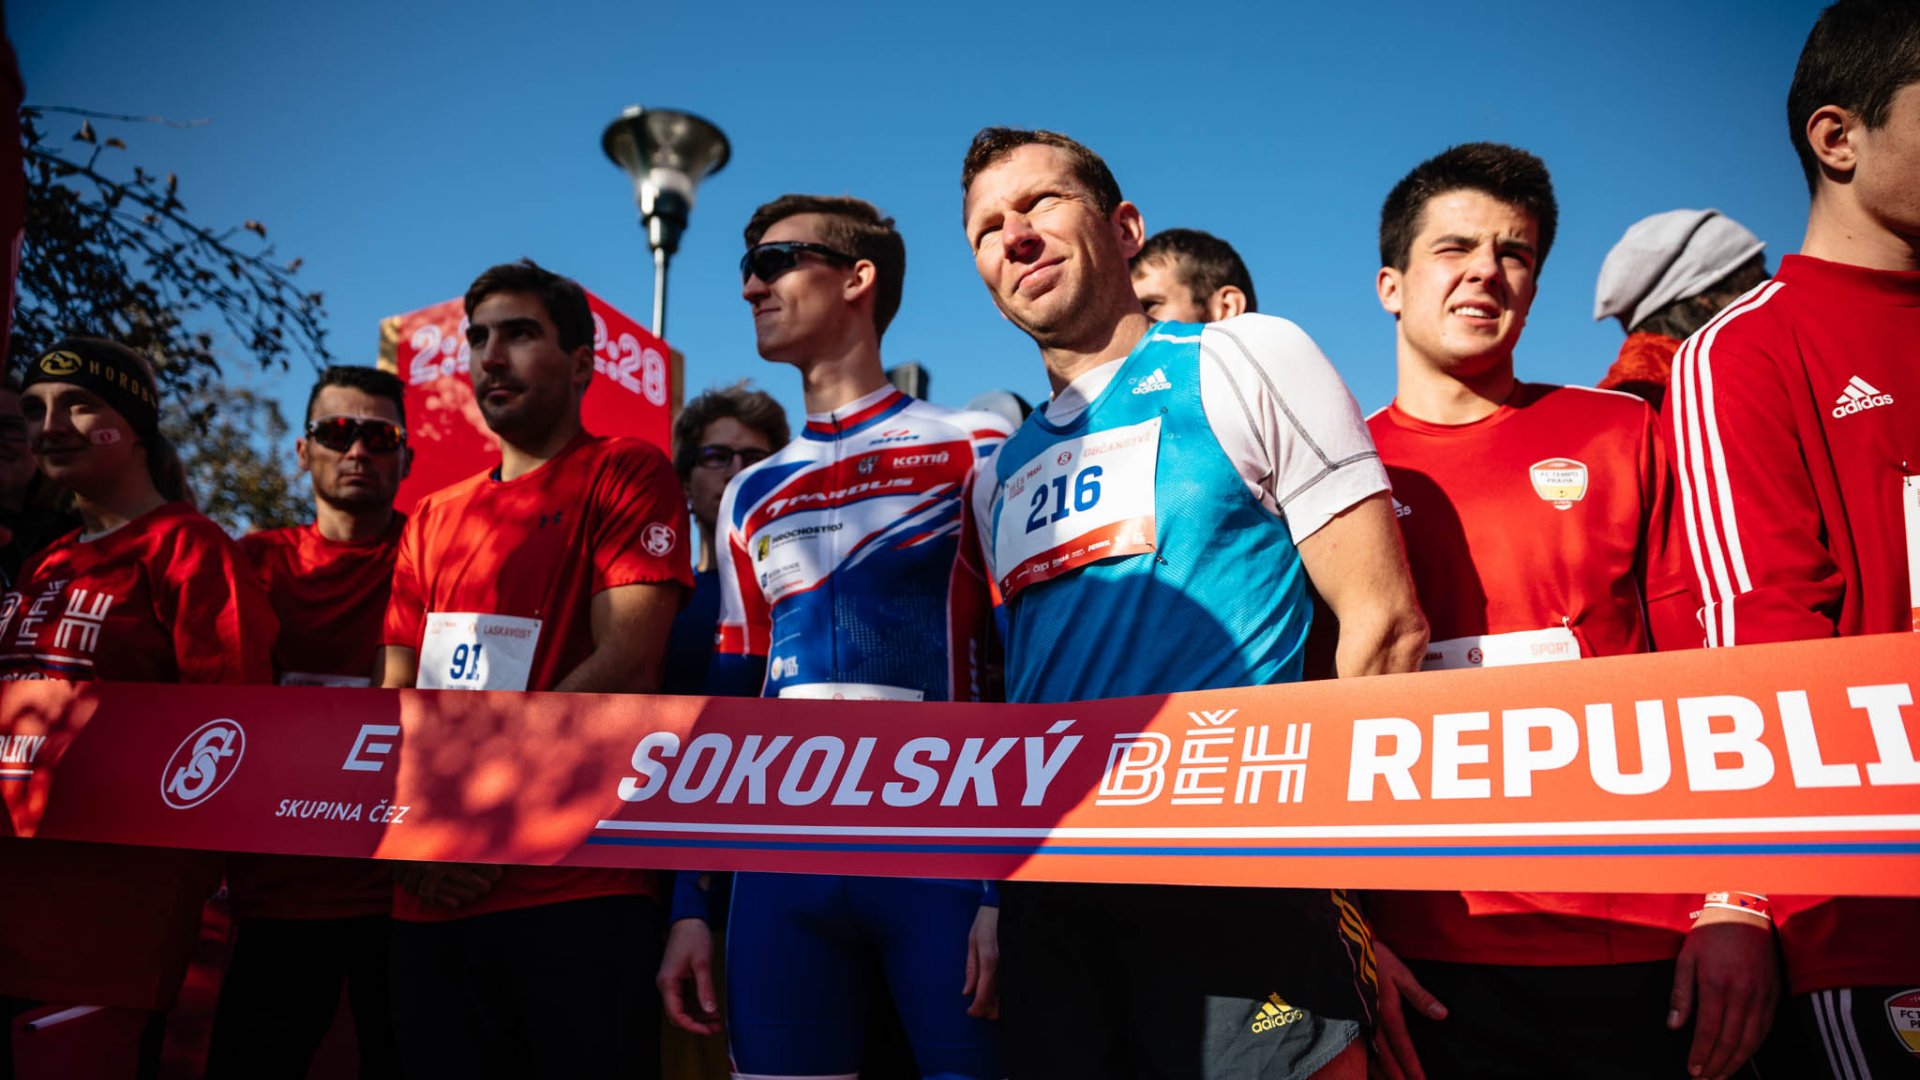 Od Ostravy po Plzeň. Přes 5 000 běžců oslavilo výročí republiky pohybem